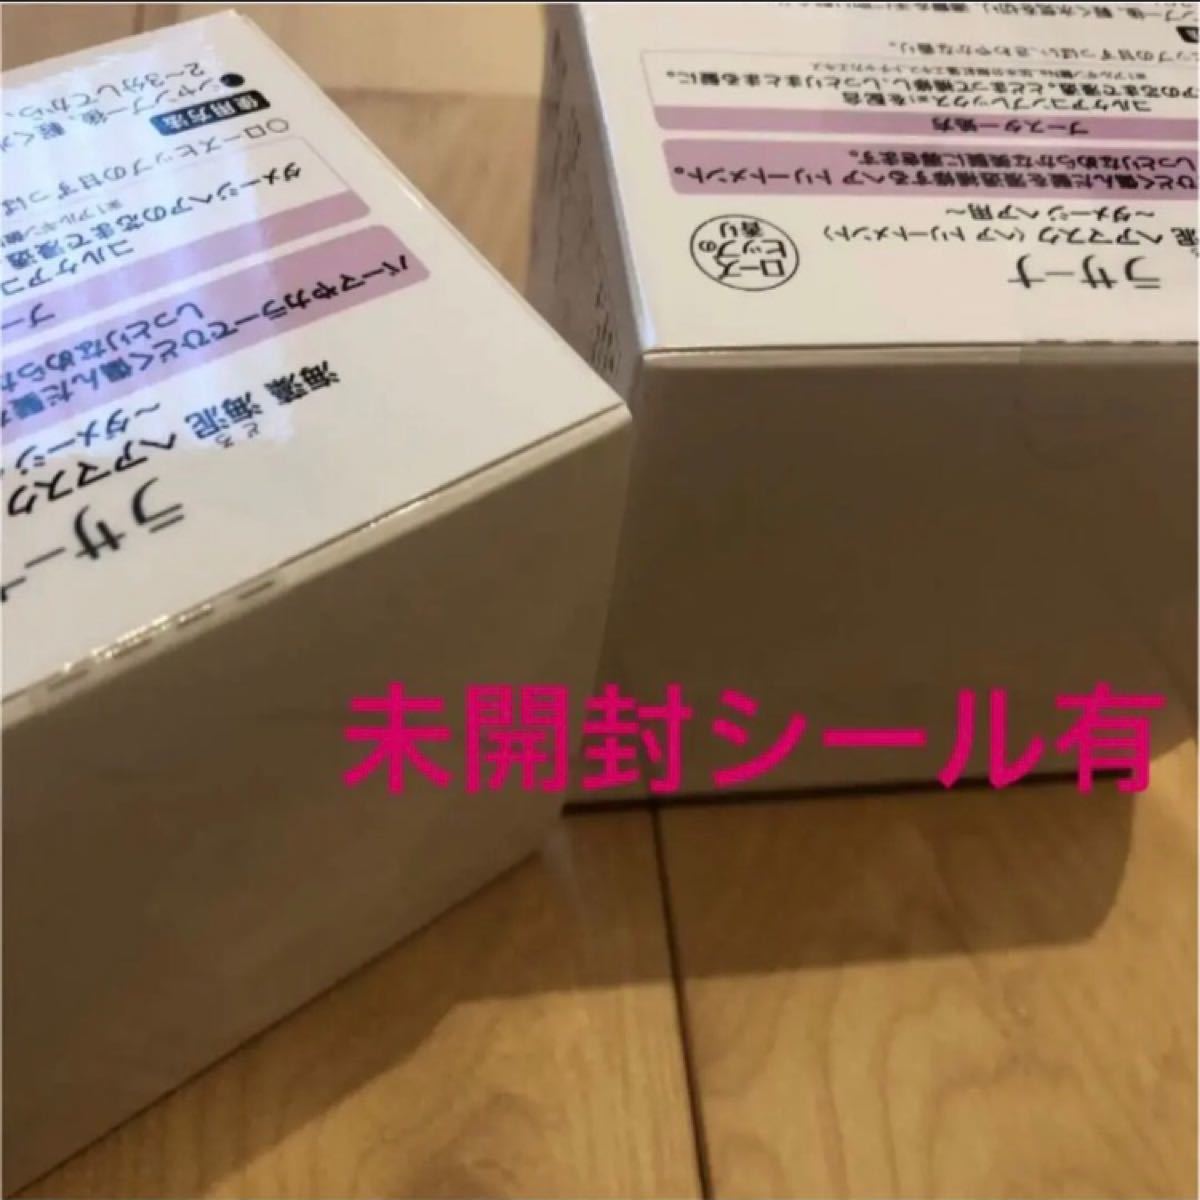 シュリンク倖せ デイヴィッド リンチ Blu-ray BOX 廃盤 - whirledpies.com